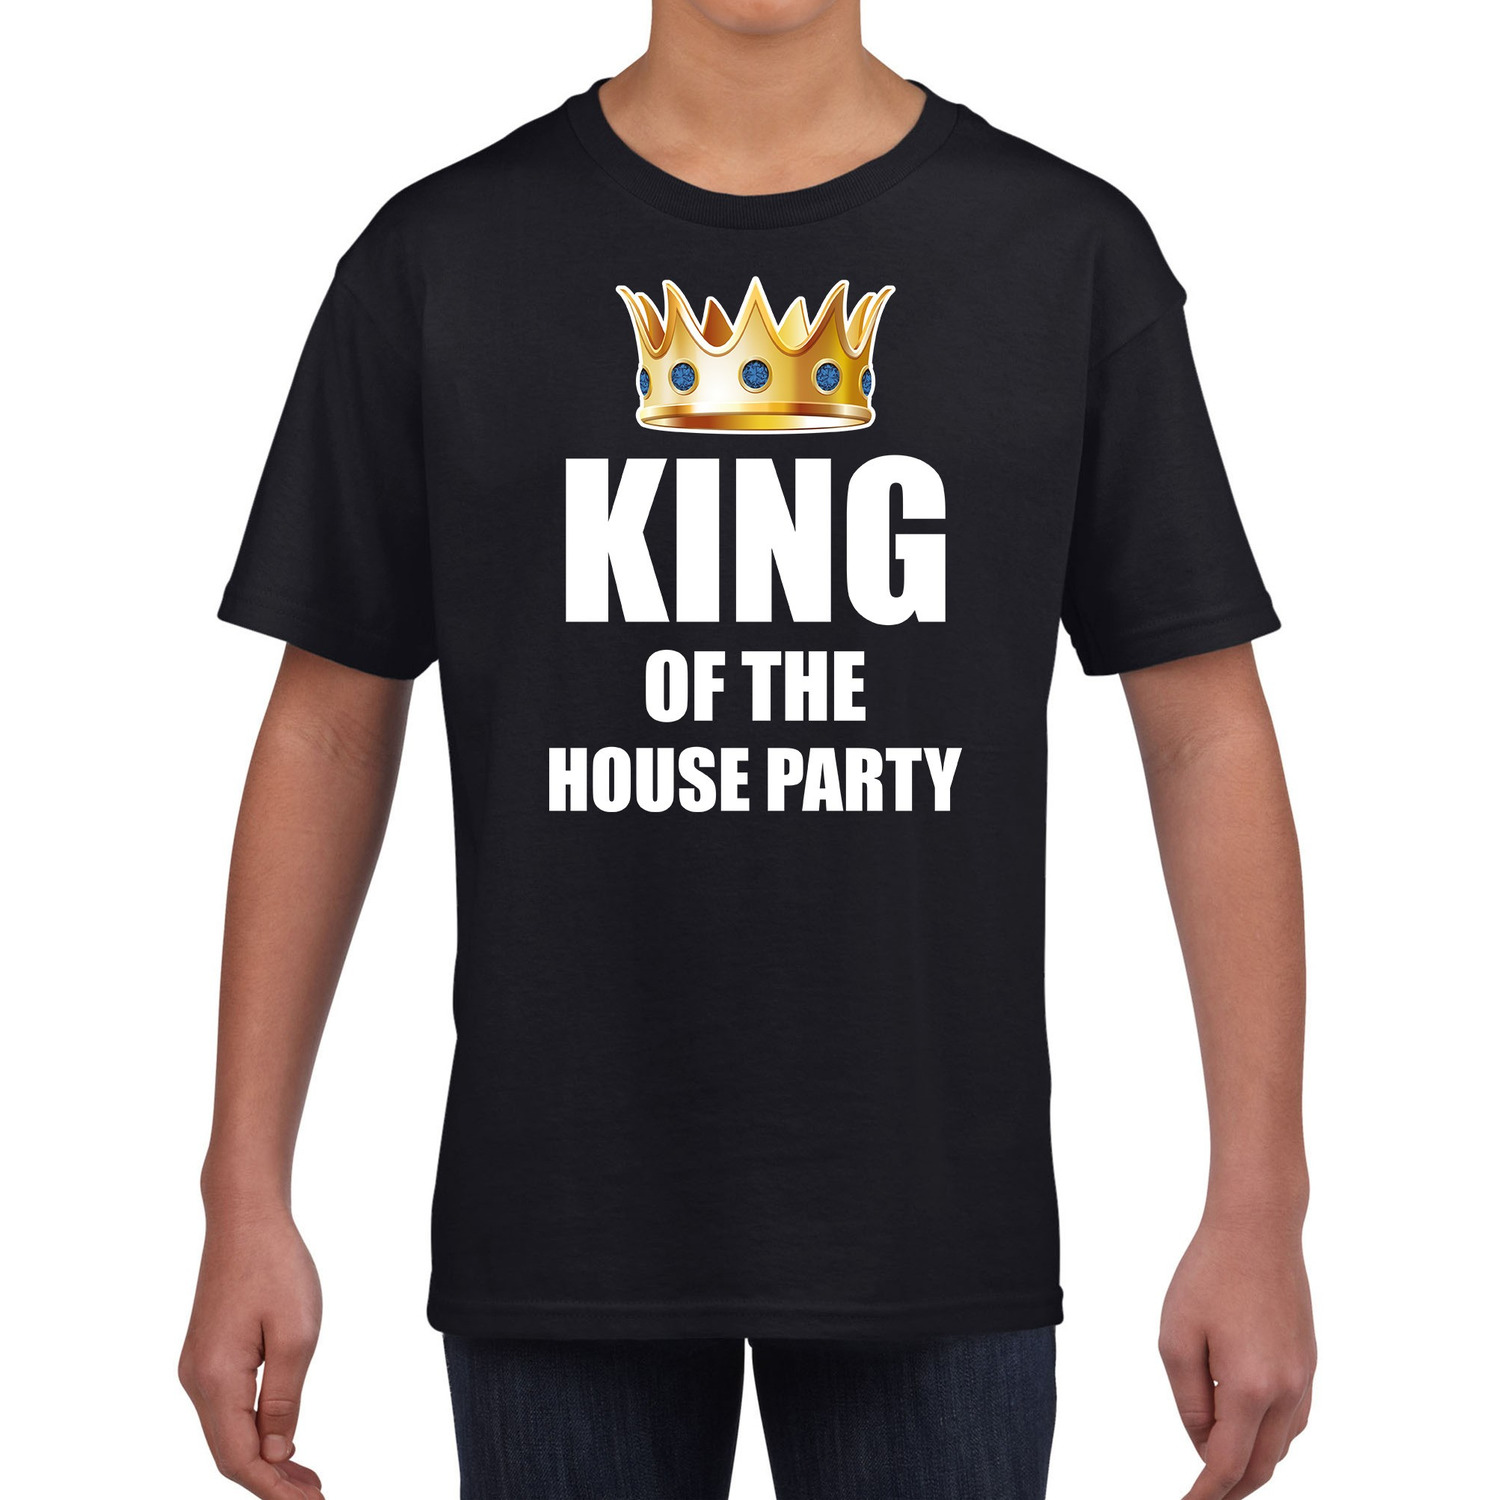 King of the house party t shirt zwart voor kinderen jongens Woningsdag Koningsdag thuisblijvers lui dagje relax shirtje